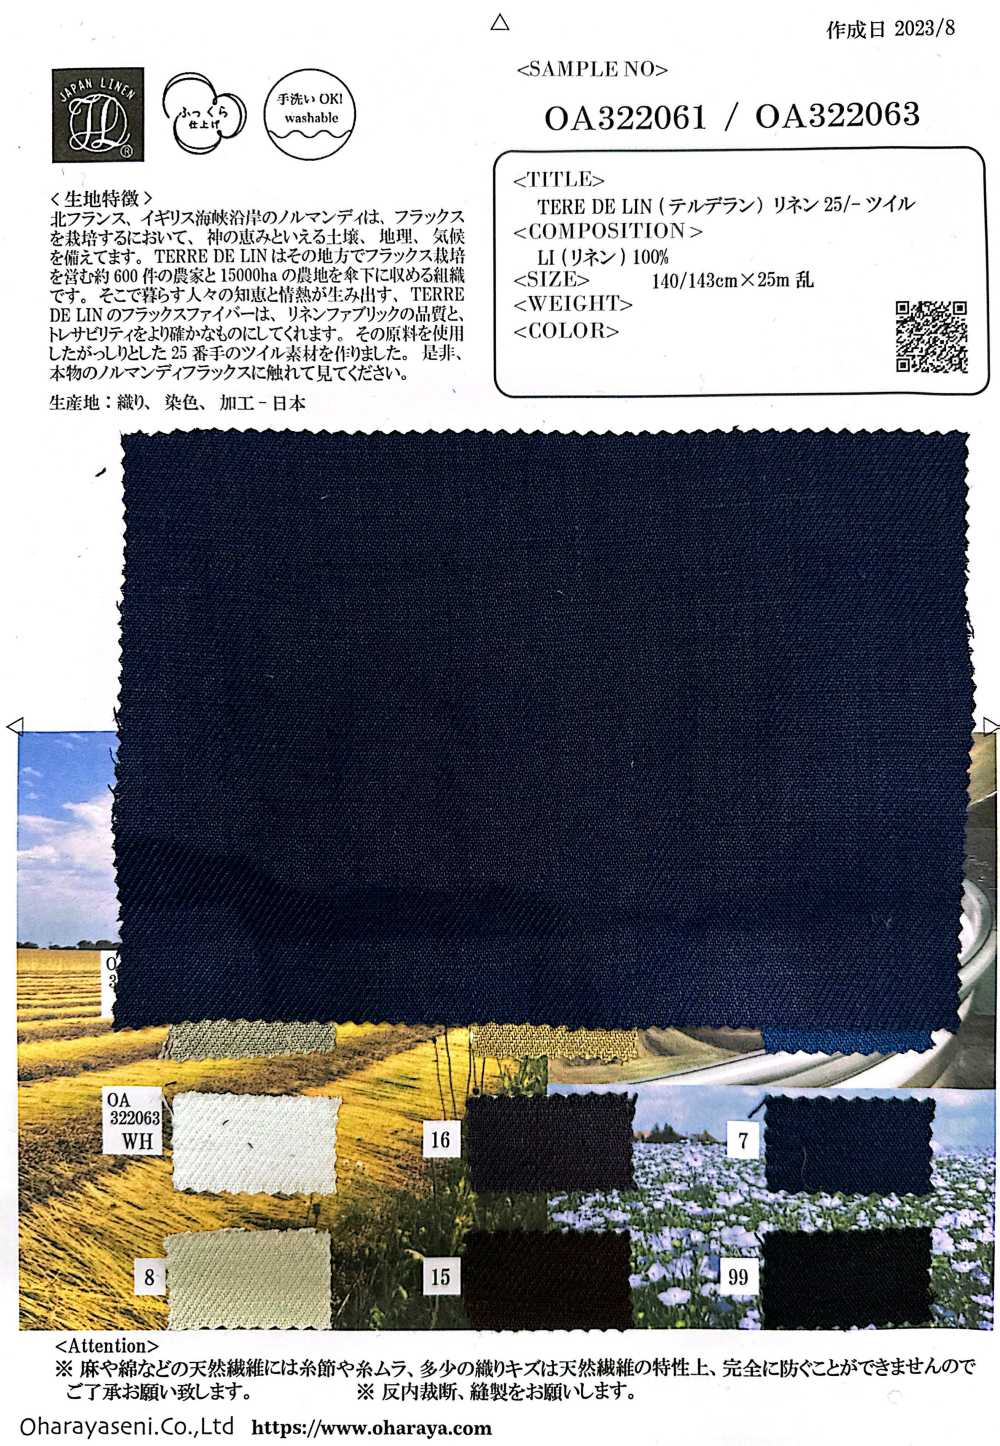 OA322063 TERE DE LIN Linen 25/-Twill[Textile / Fabric] Oharayaseni